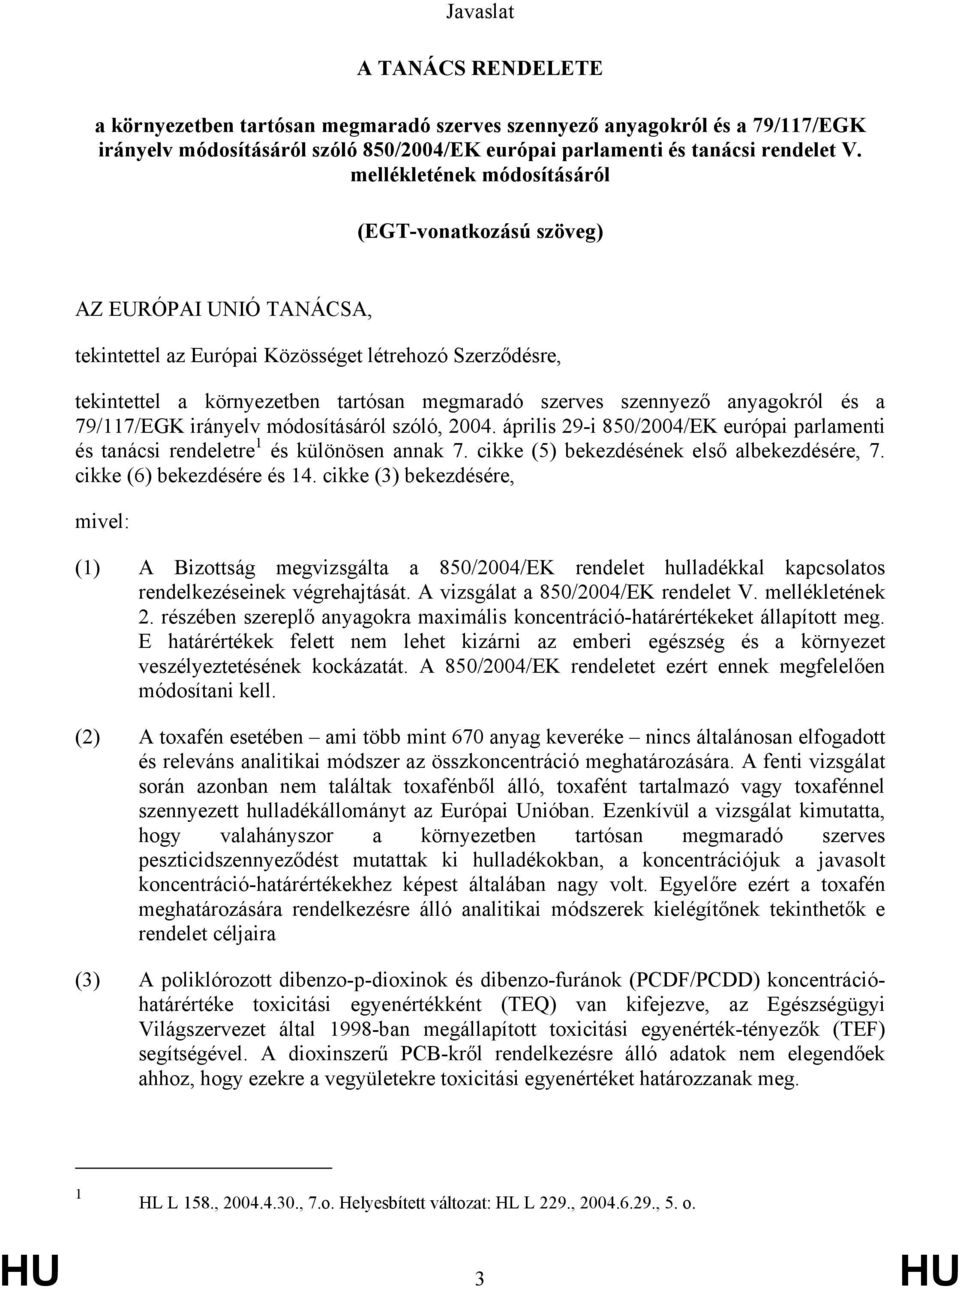 anyagokról és a 79/117/EGK irányelv módosításáról szóló, 2004. április 29-i 850/2004/EK európai parlamenti és tanácsi rendeletre 1 és különösen annak 7. cikke (5) bekezdésének első albekezdésére, 7.